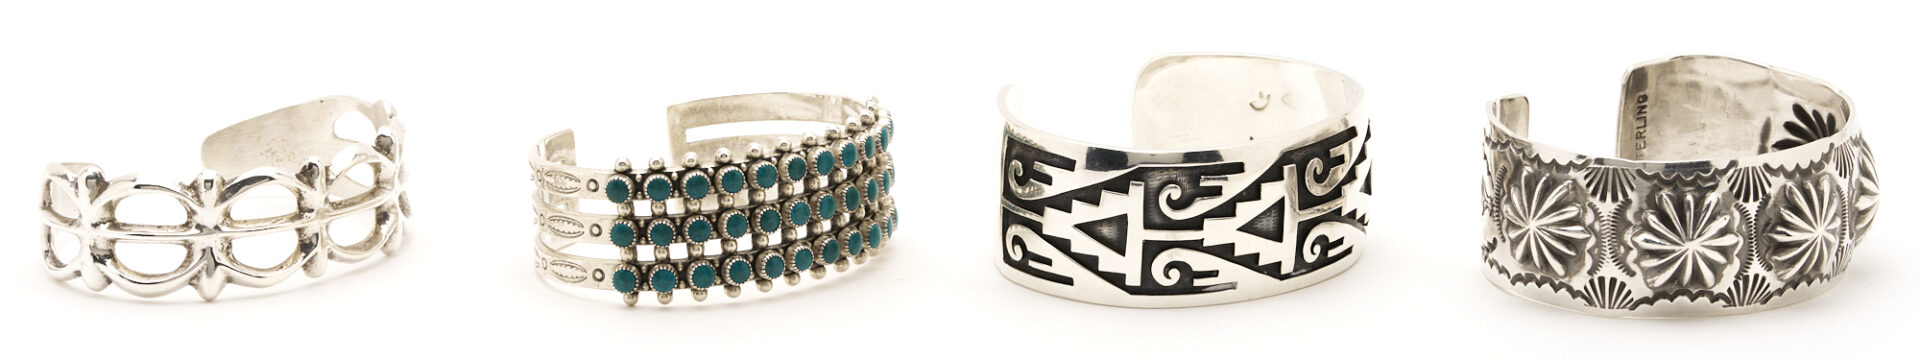 Lot 501: 7 Native American Sterling Cuff Bracelets & 2 Prs. Earrings